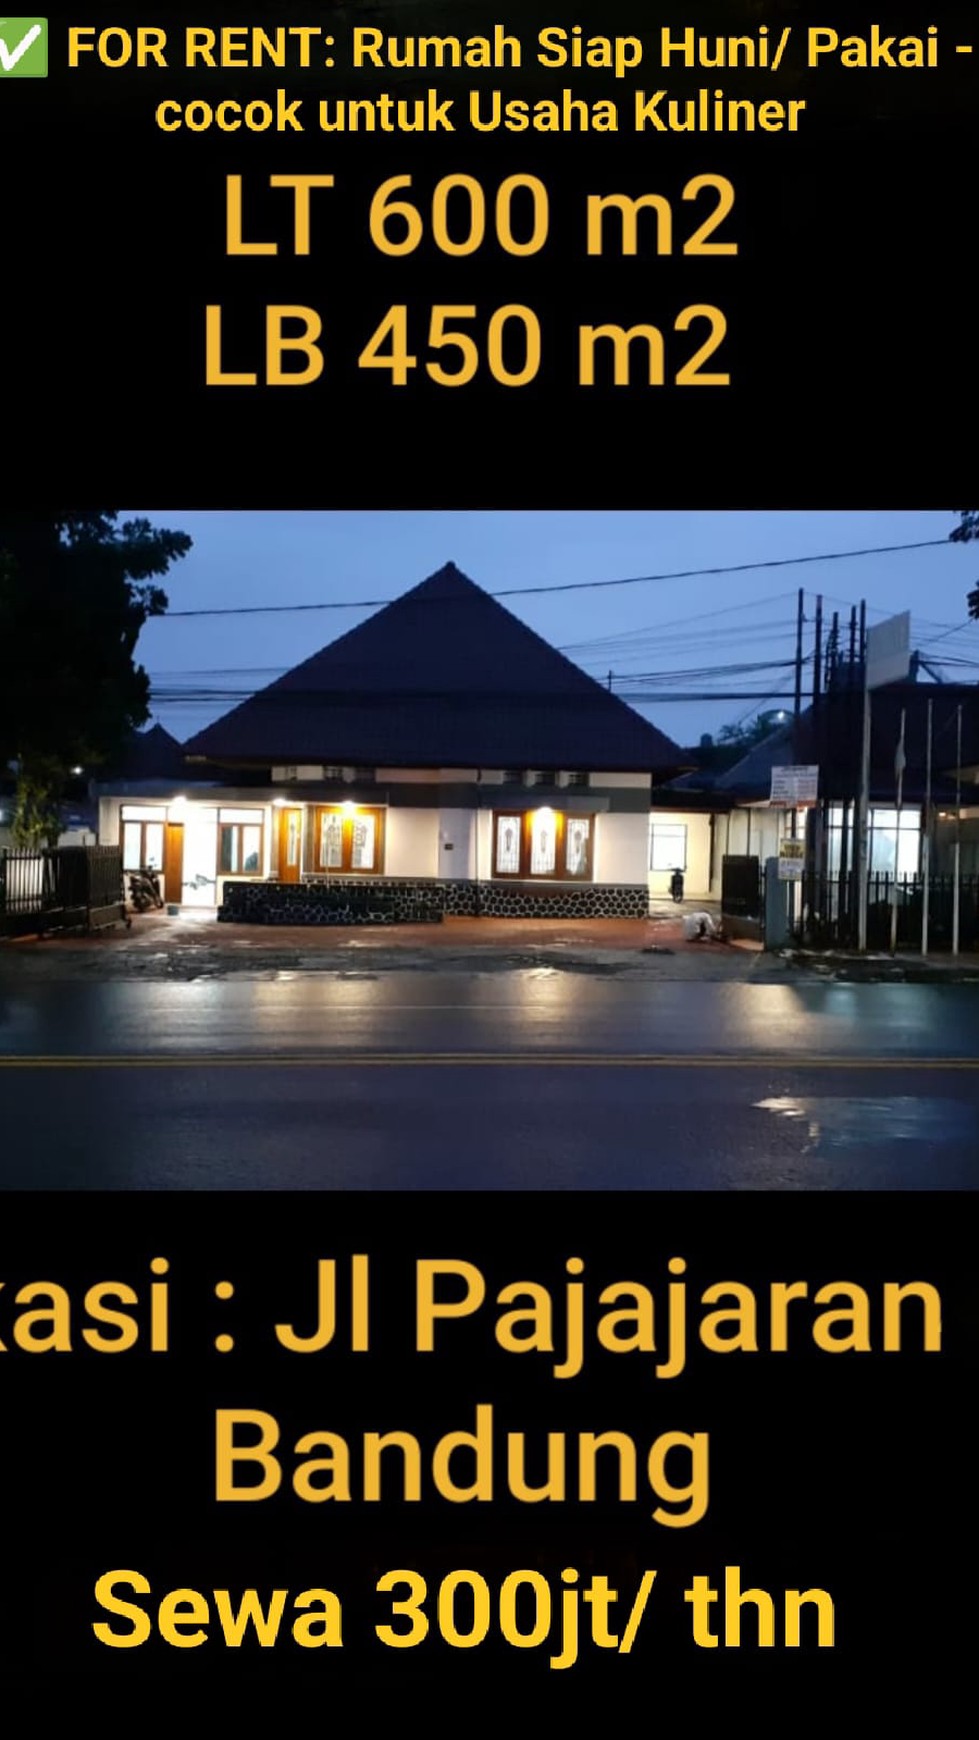 Ruang Usaha Rumah Klasik di Mainroad Pajajaran Kota Bandung